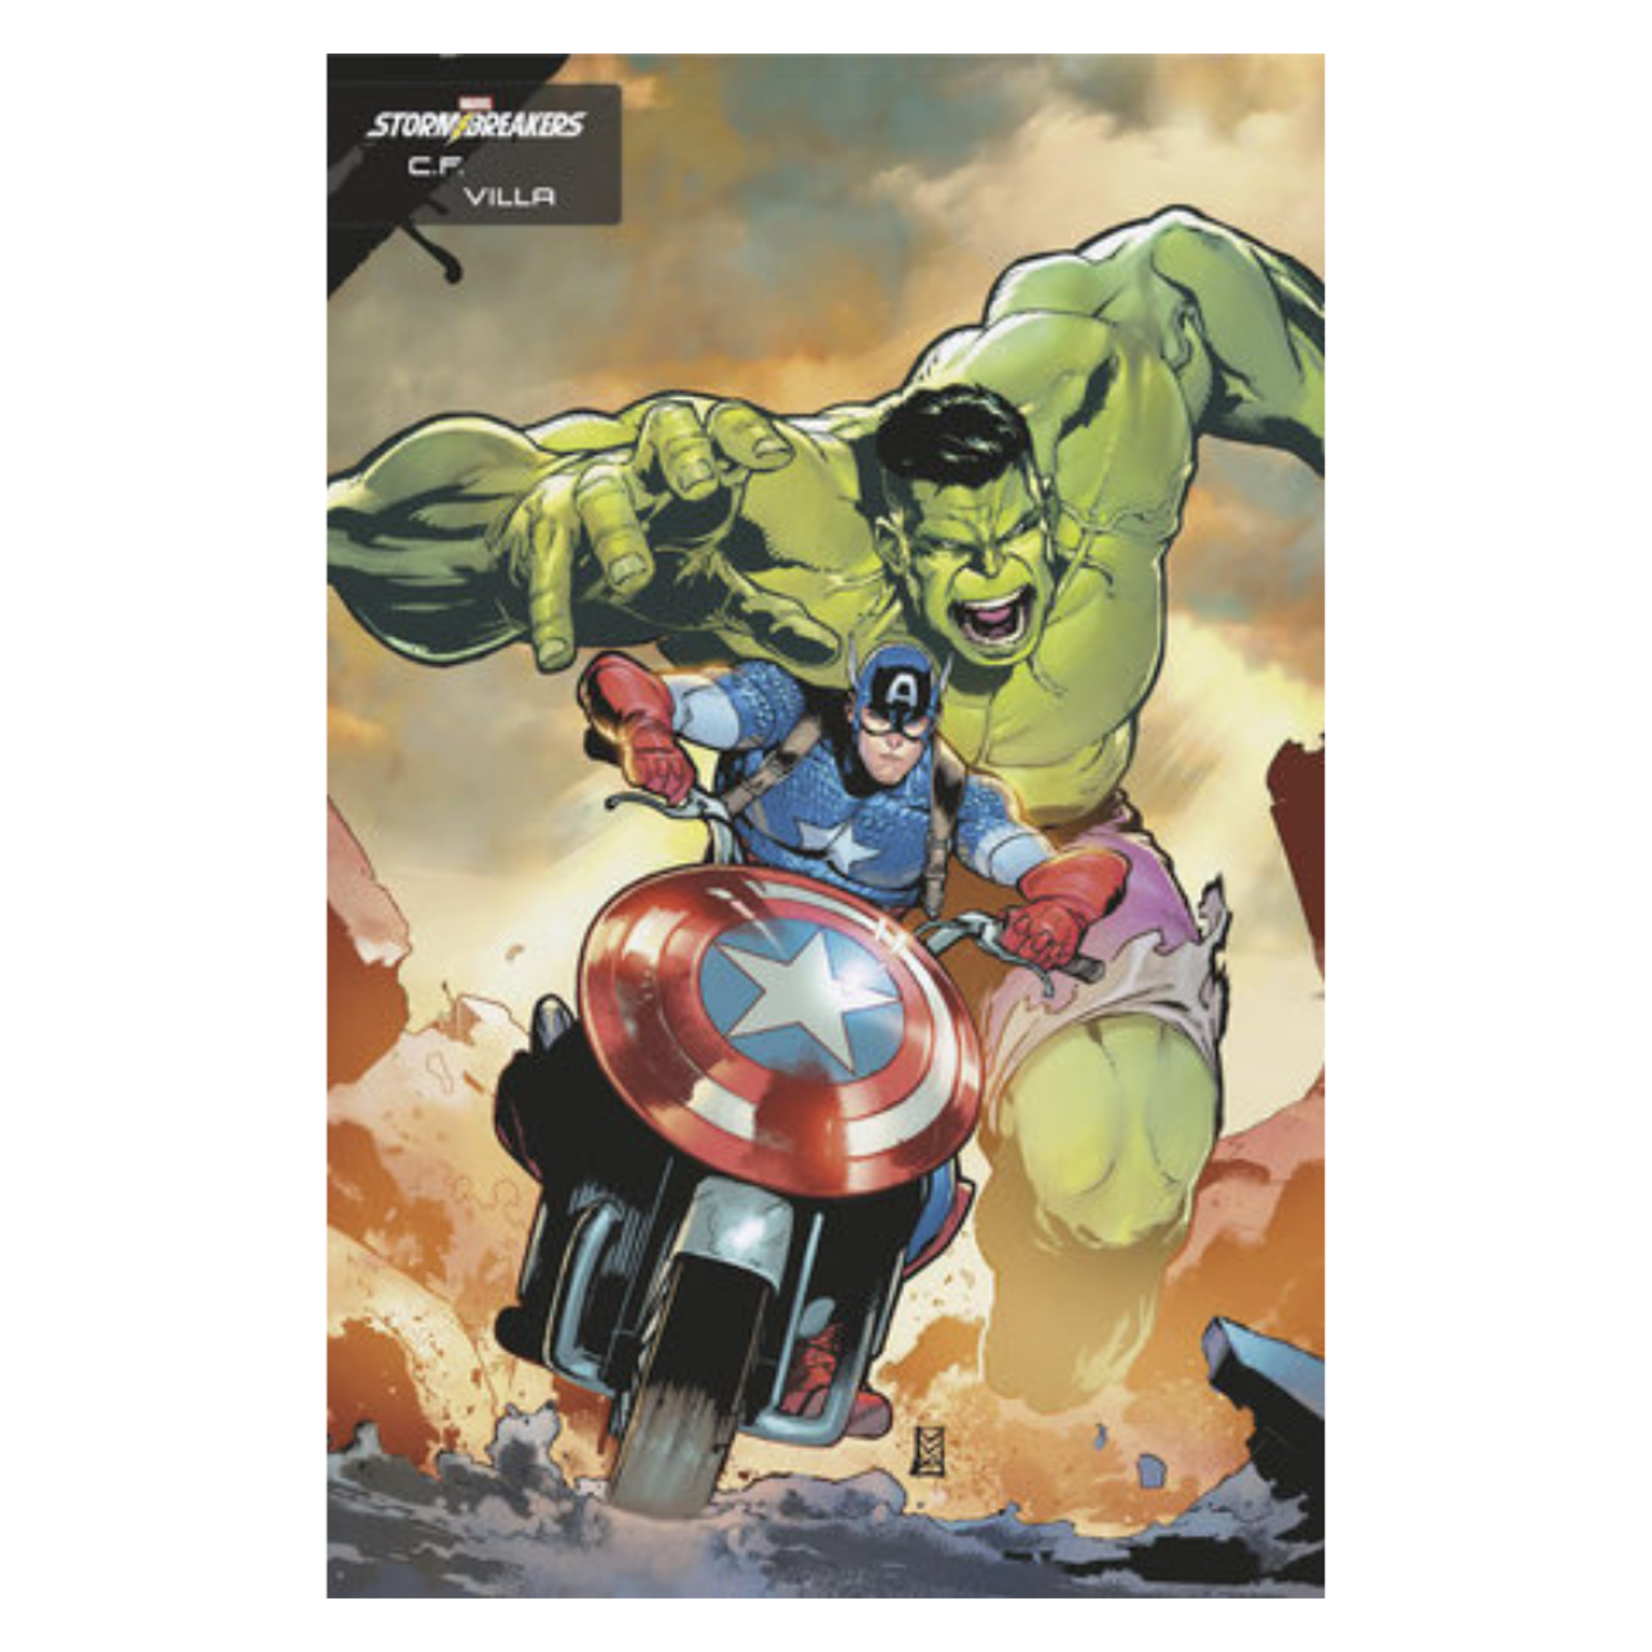 Marvel Comics Incredible Hulk #4 C.F. Villa Stormbreakers Variant